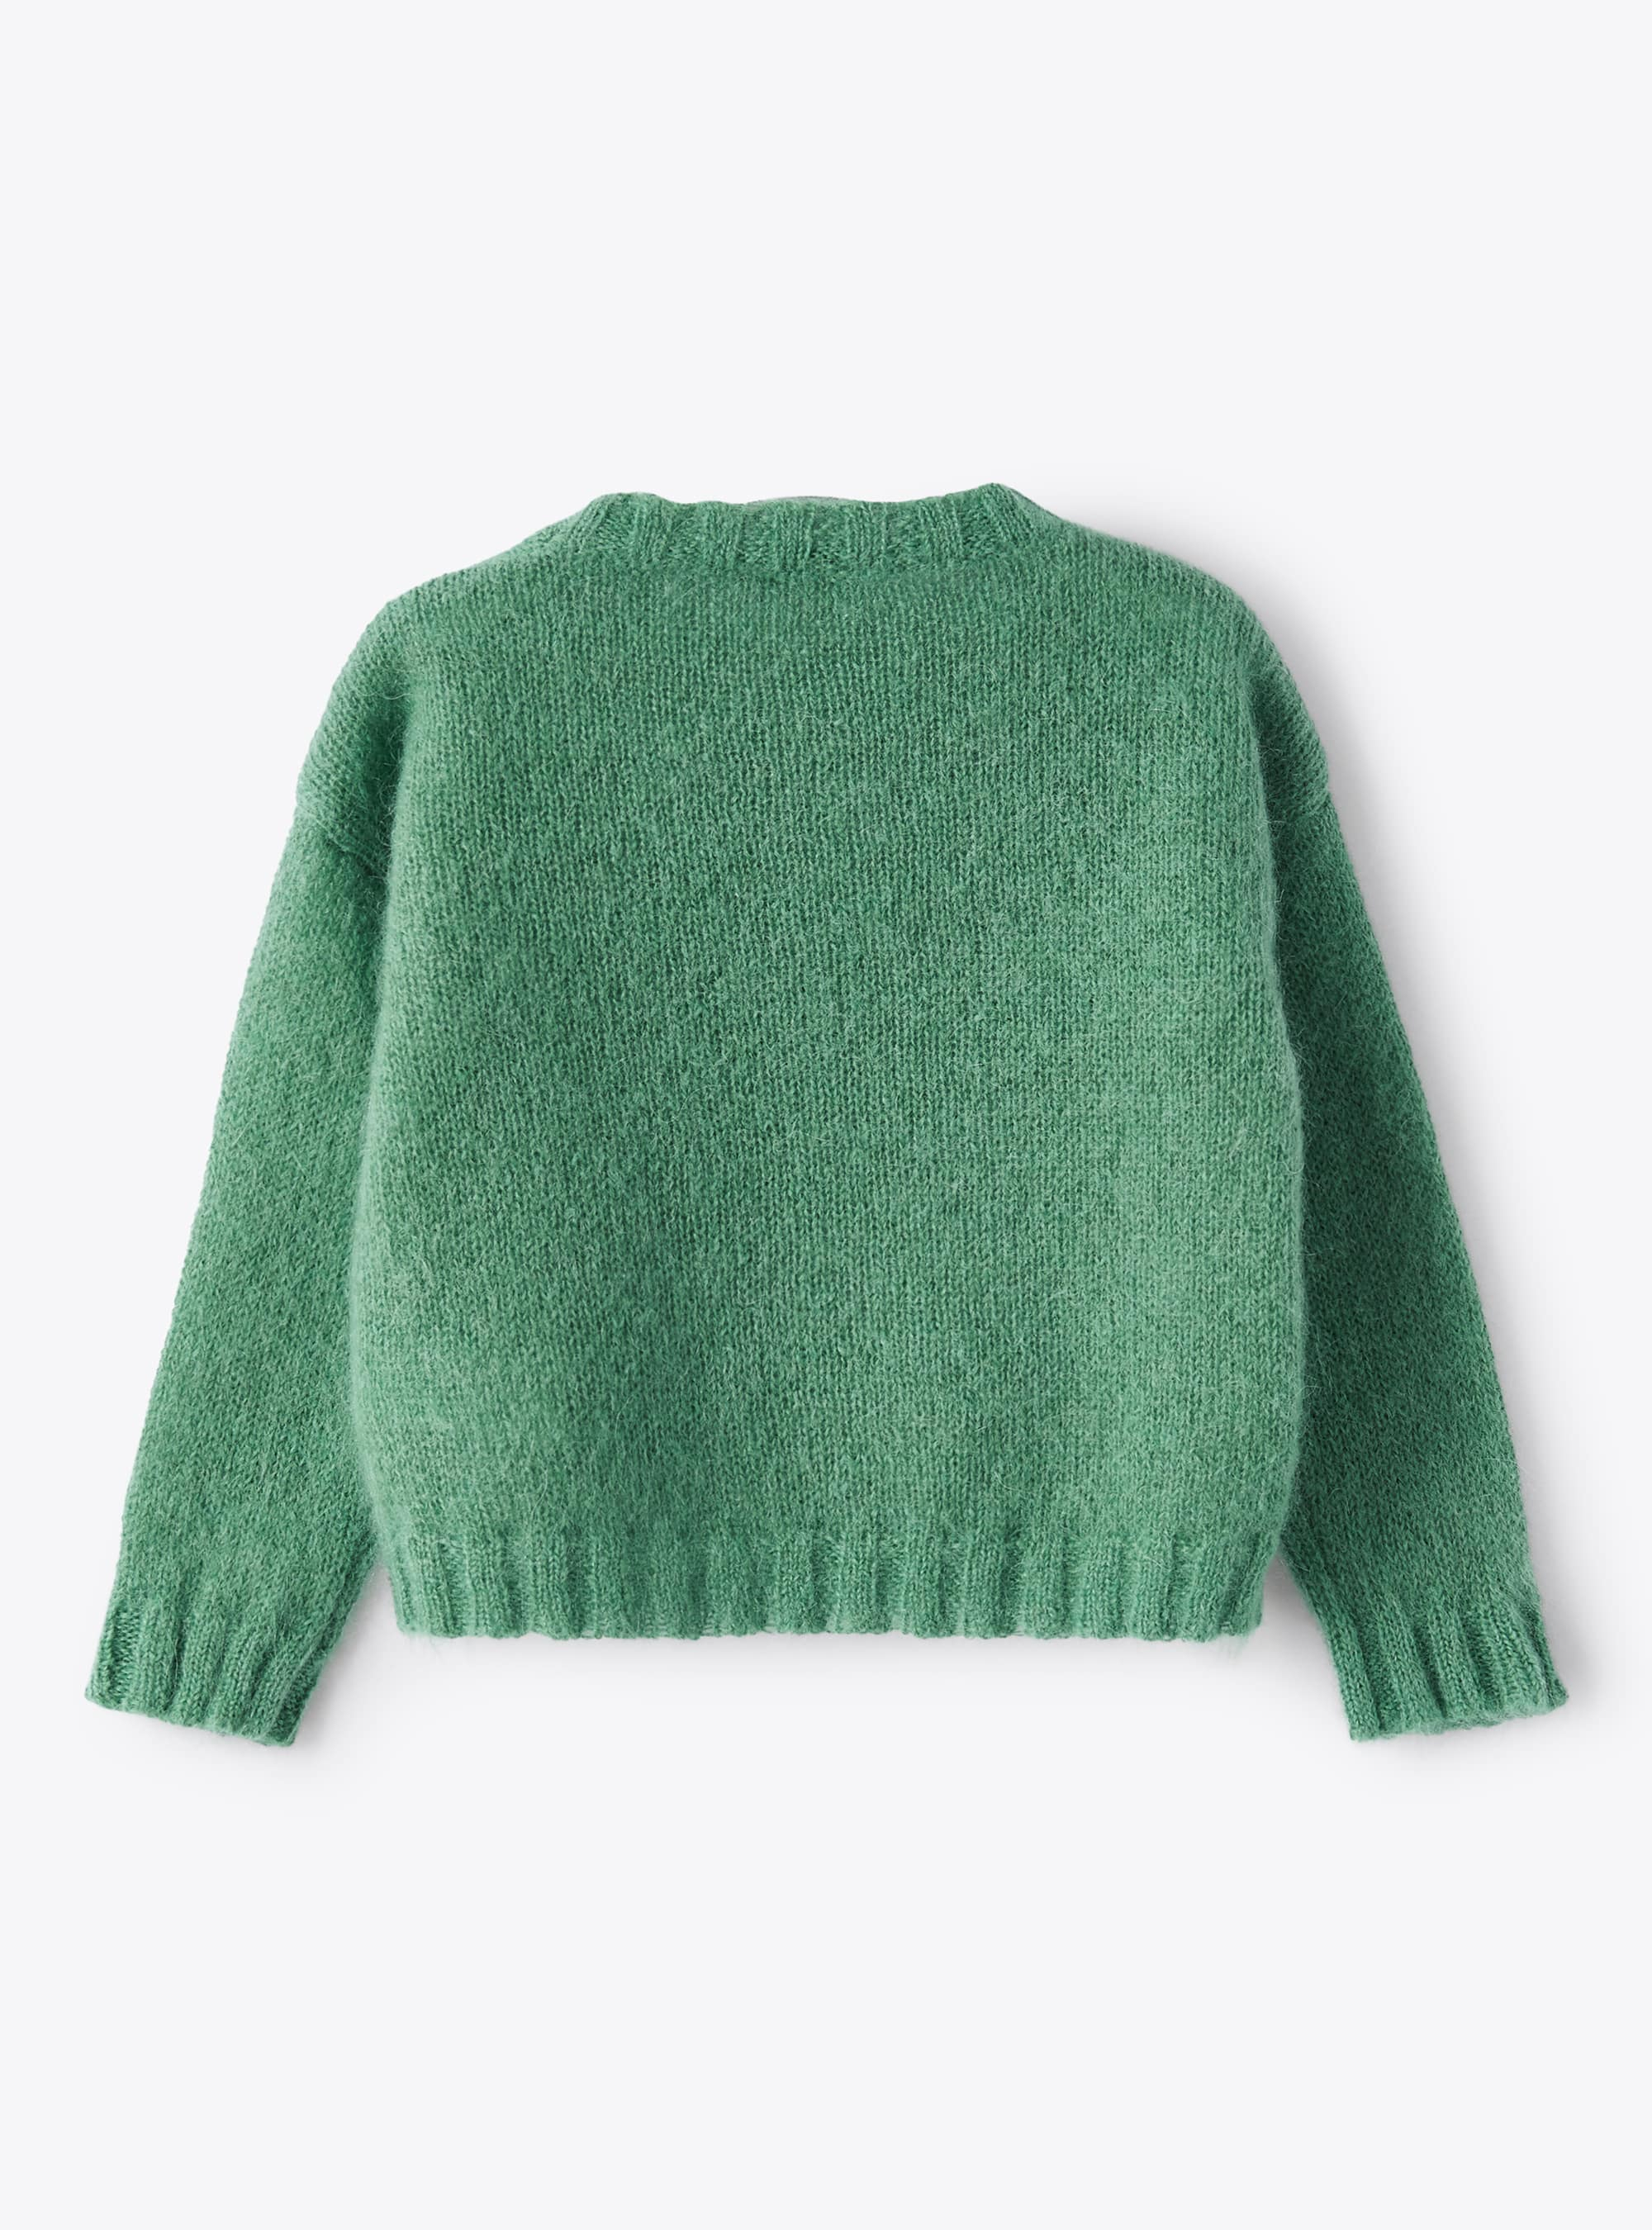 Pullover aus Mohairwolle in Wassergrün - Grün | Il Gufo